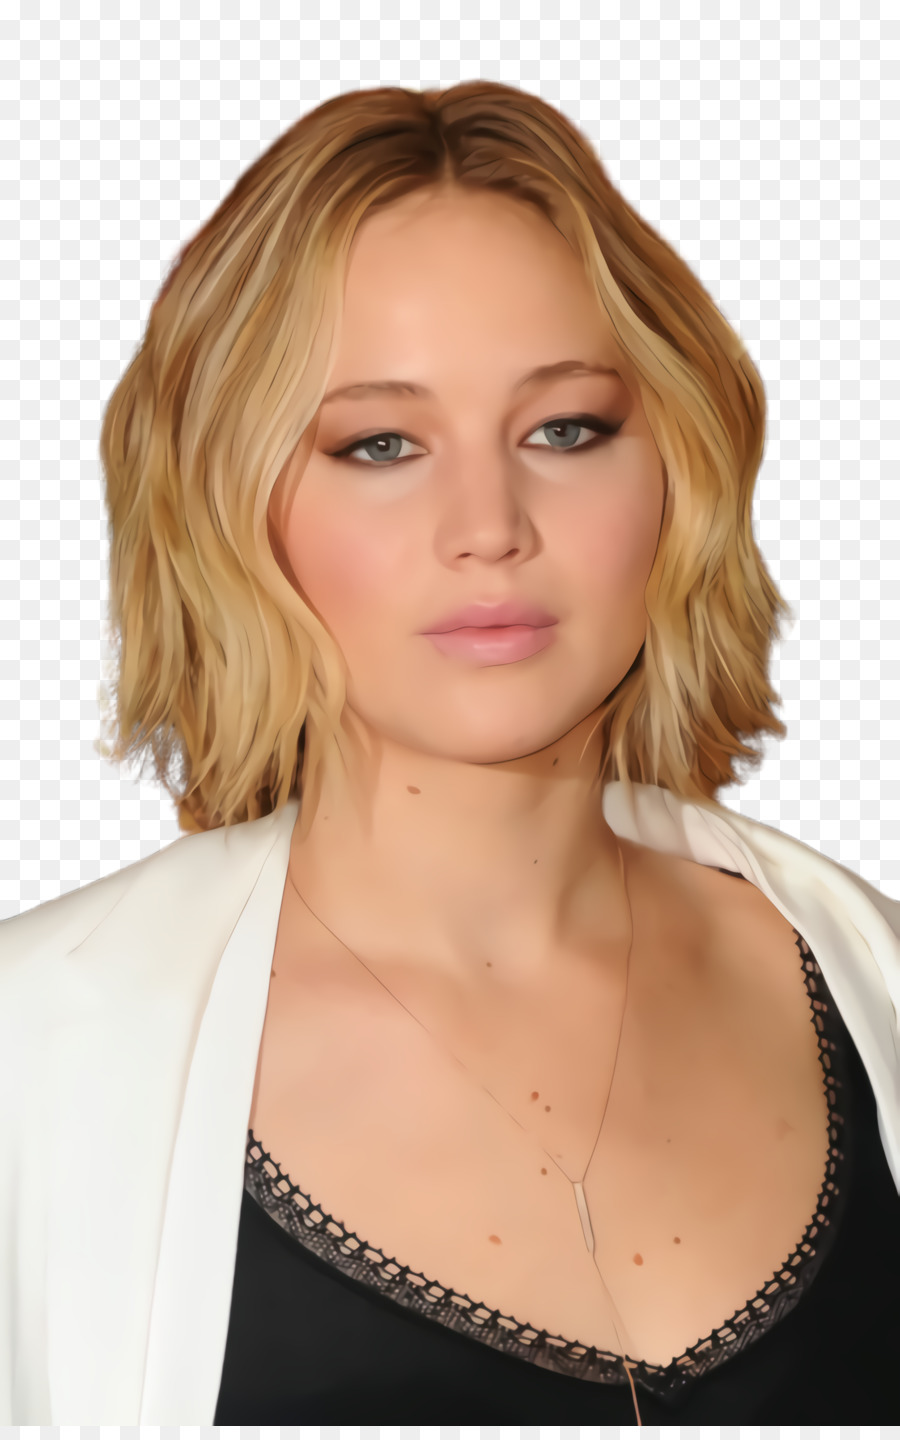 Jennifer Lawrence Frisur Bob schnitt Model The Hunger Games - 